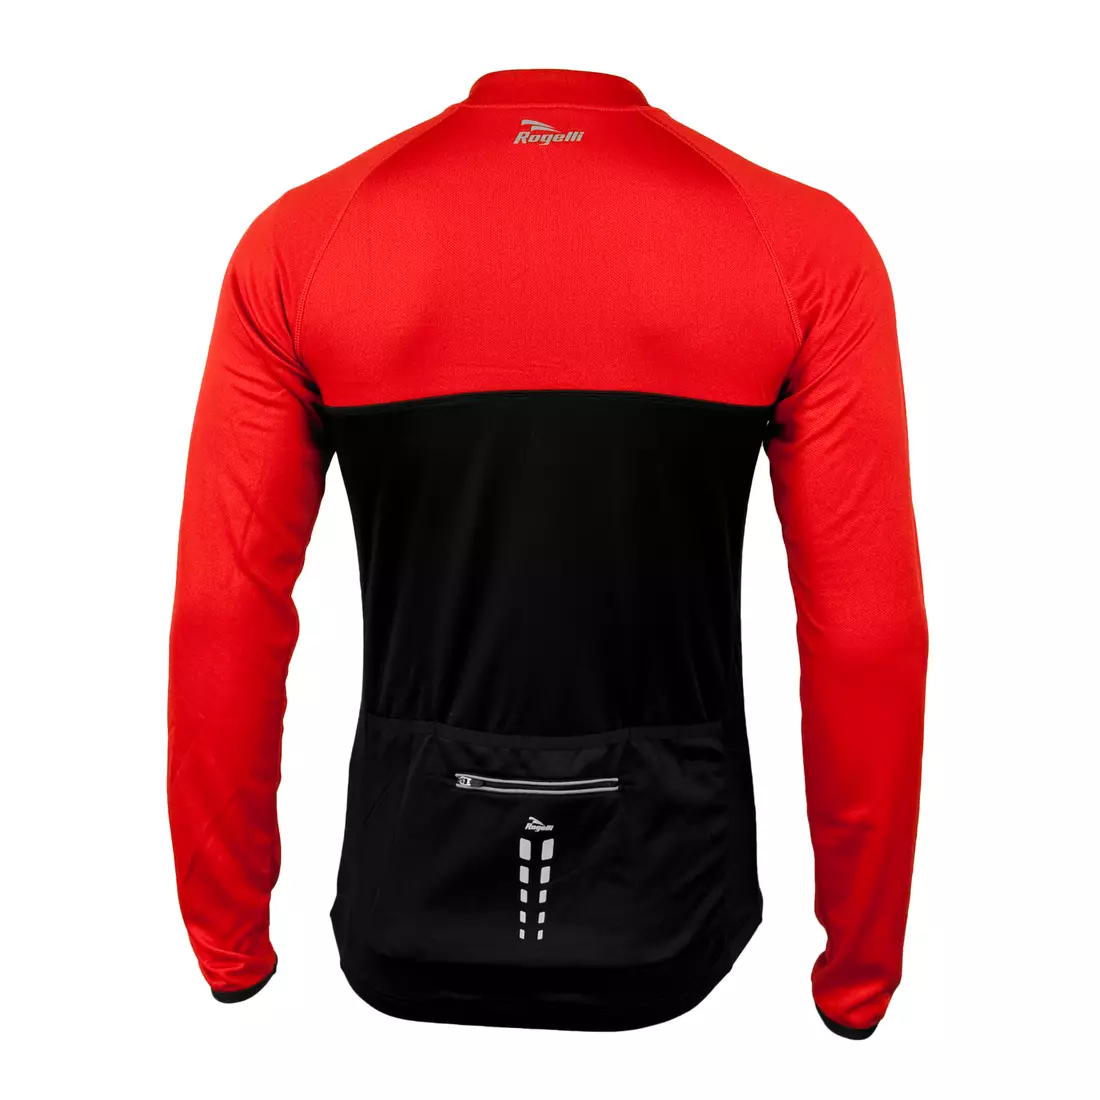 ROGELLI CALUSO - leicht isoliertes Fahrrad-Sweatshirt, Farbe: Schwarz und Rot